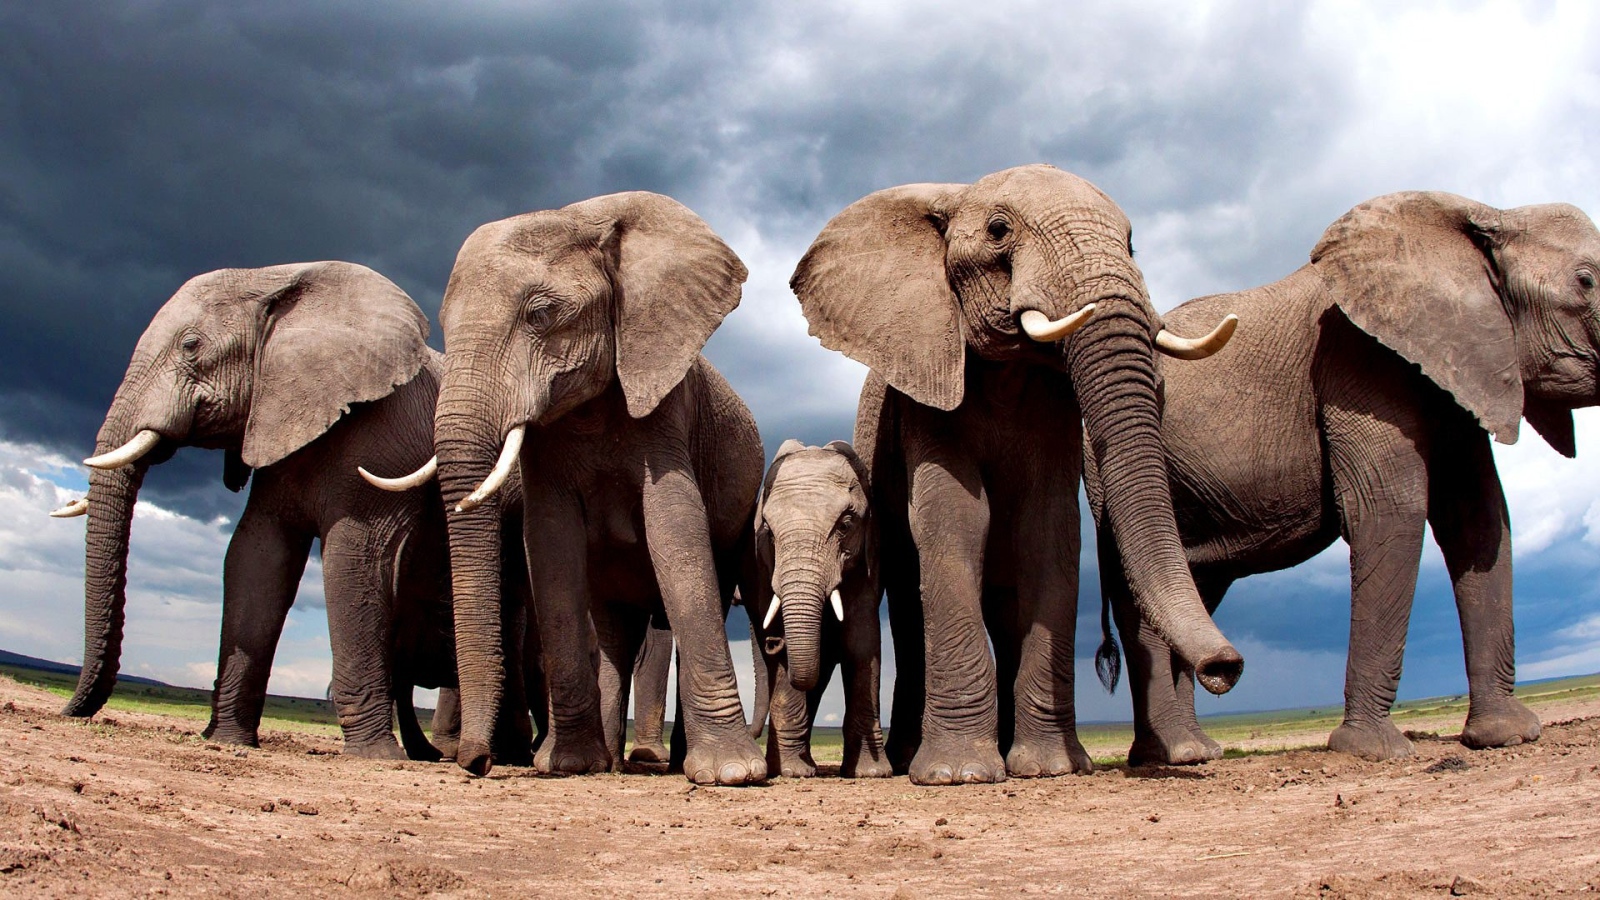 Elephants protect elephant